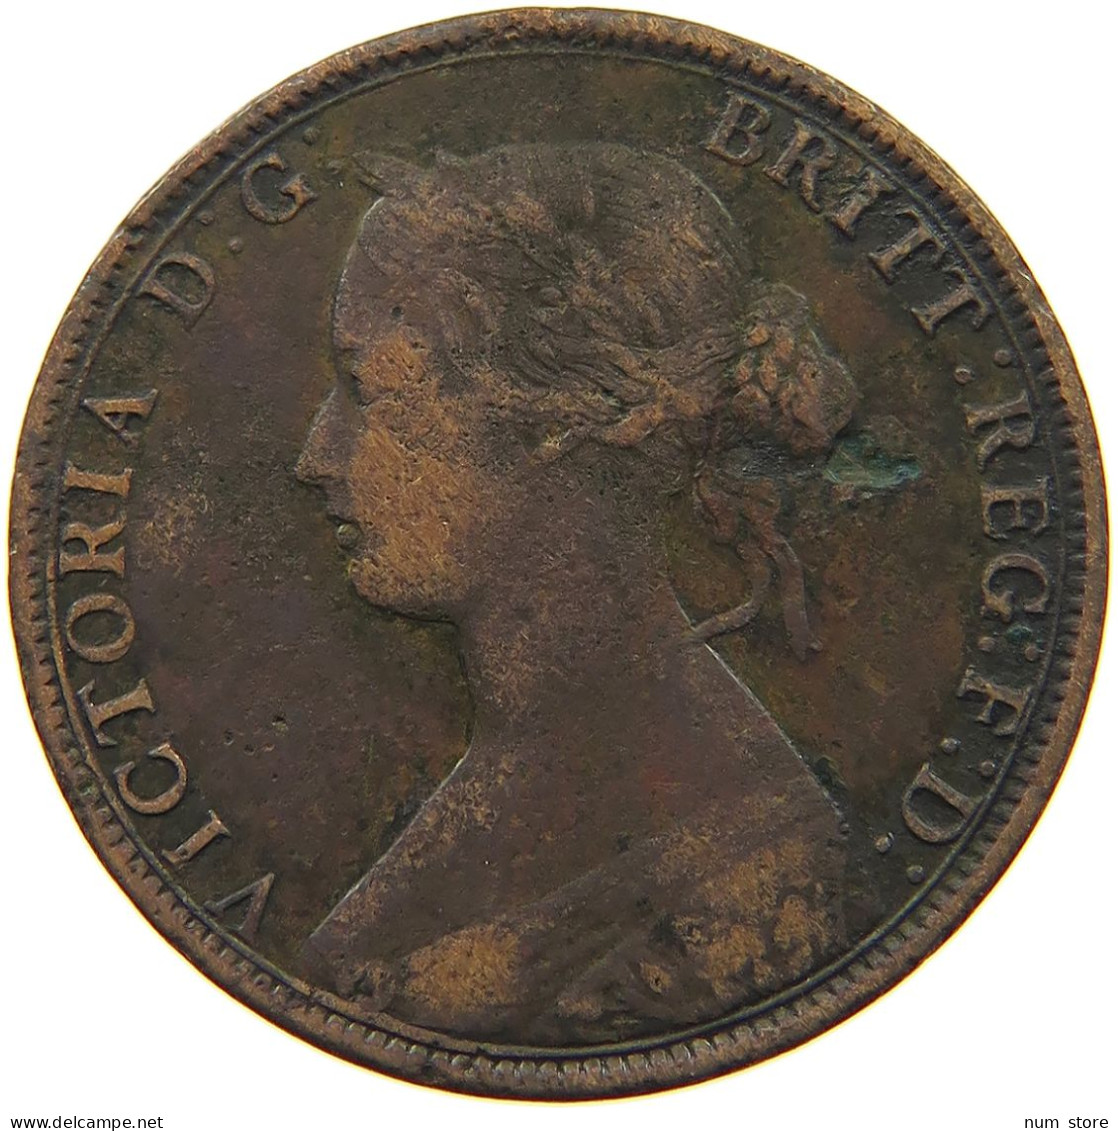 GREAT BRITAIN HALFPENNY 1863 Victoria 1837-1901 #c079 0111 - C. 1/2 Penny